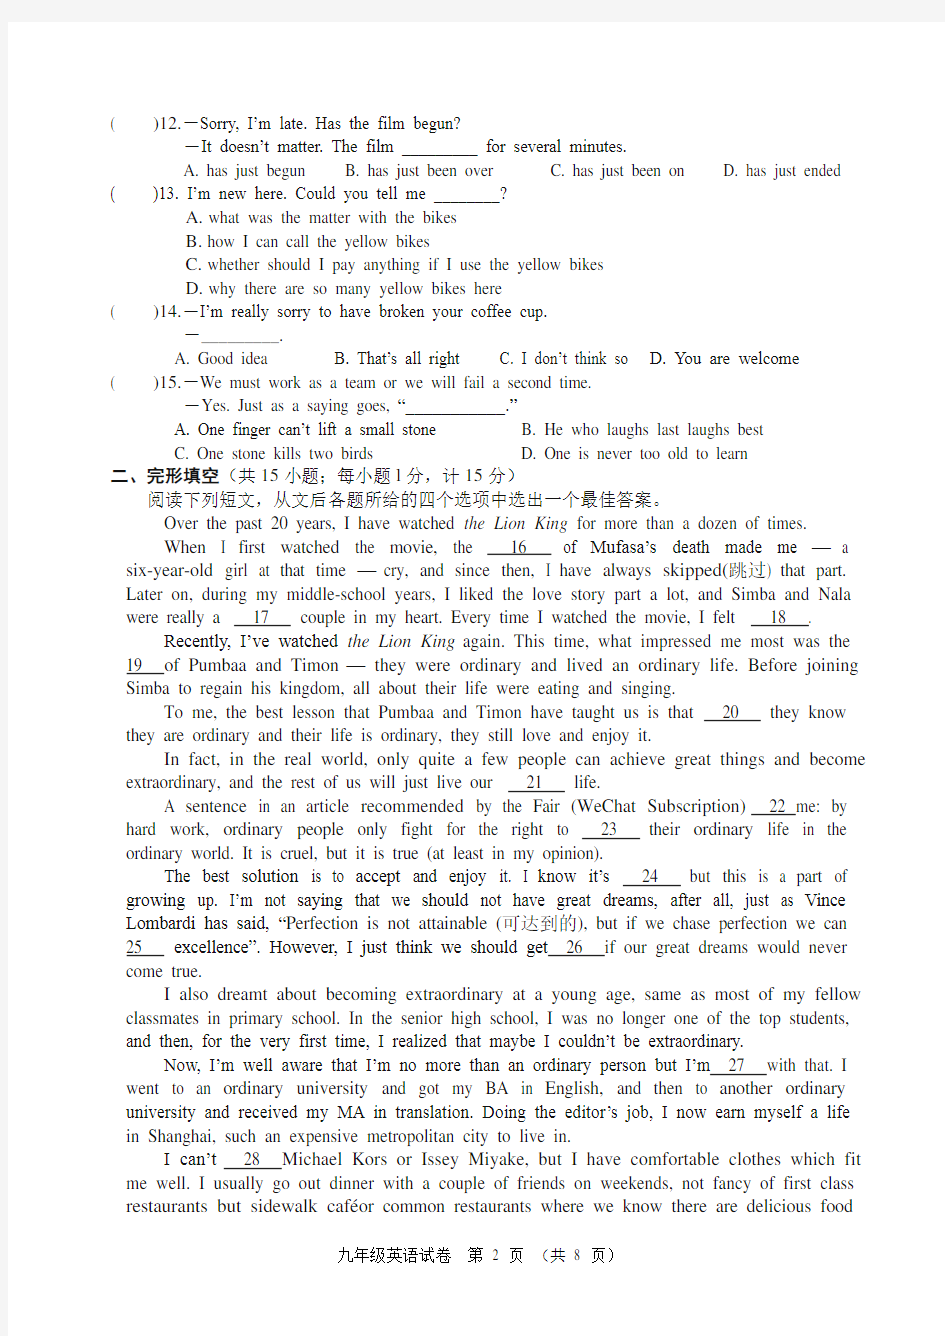 扬州市梅岭中学2018年初三英语二模拟考试(含答案)